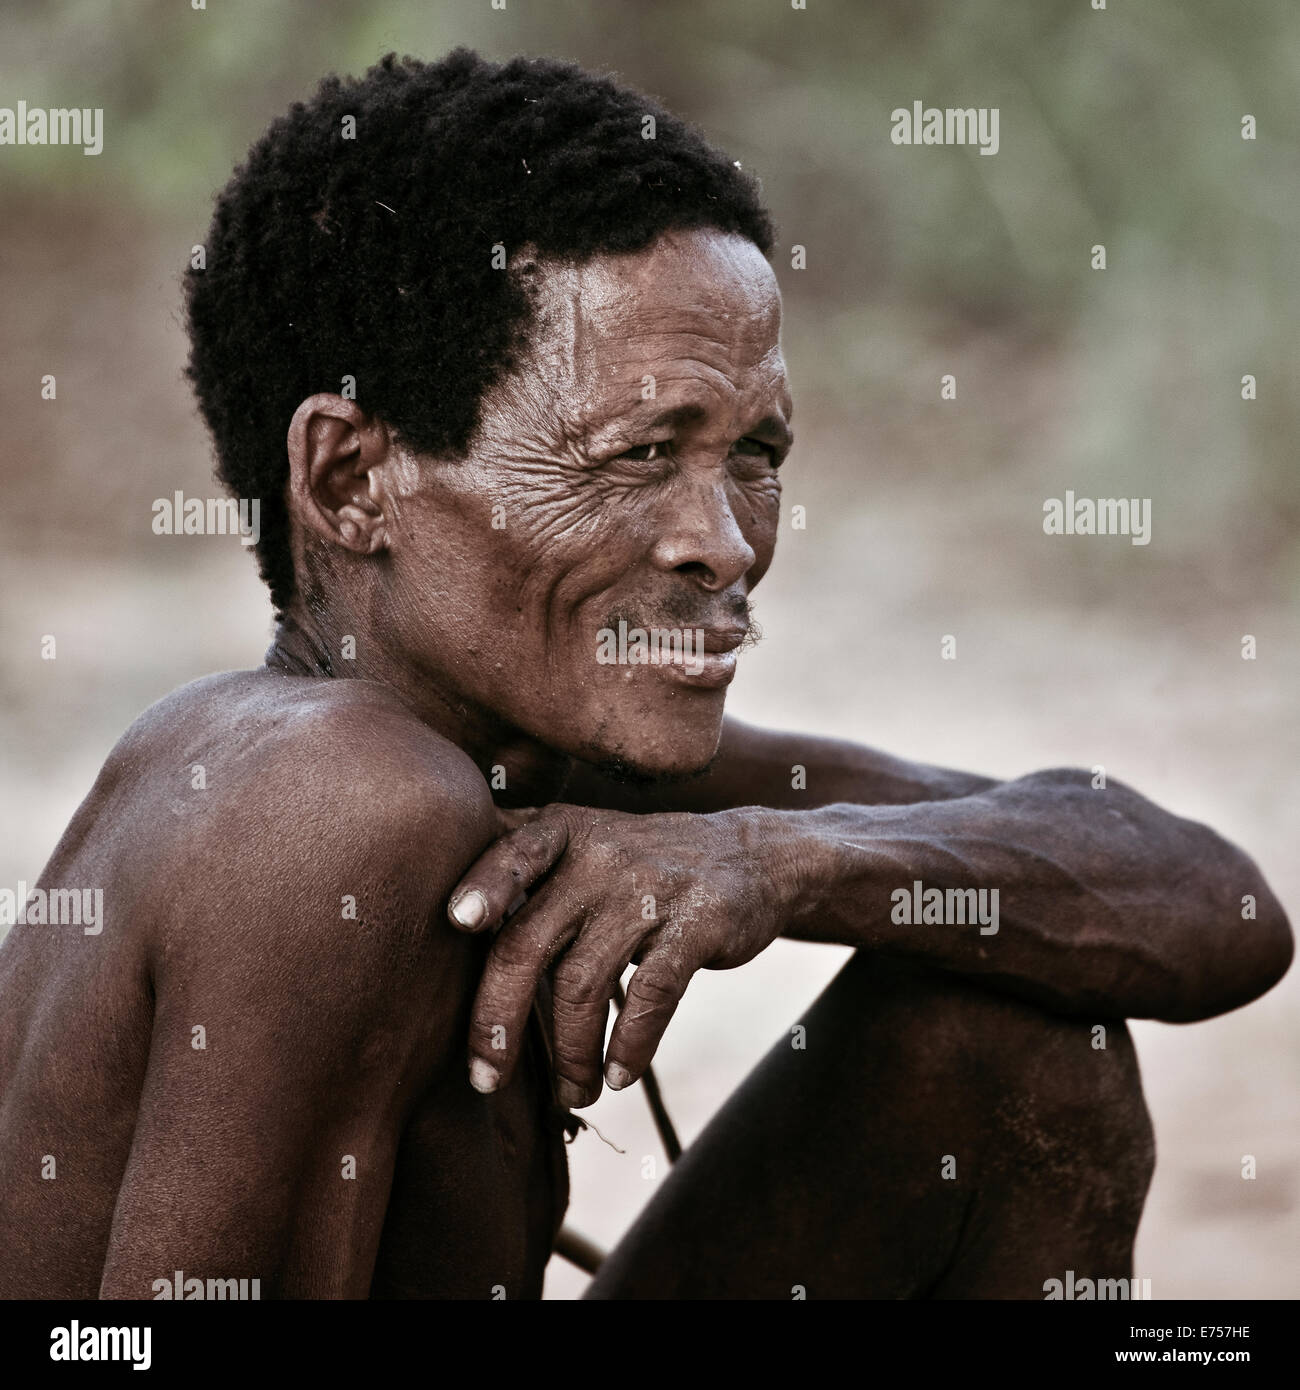 African Kalahari tribesman Foto Stock